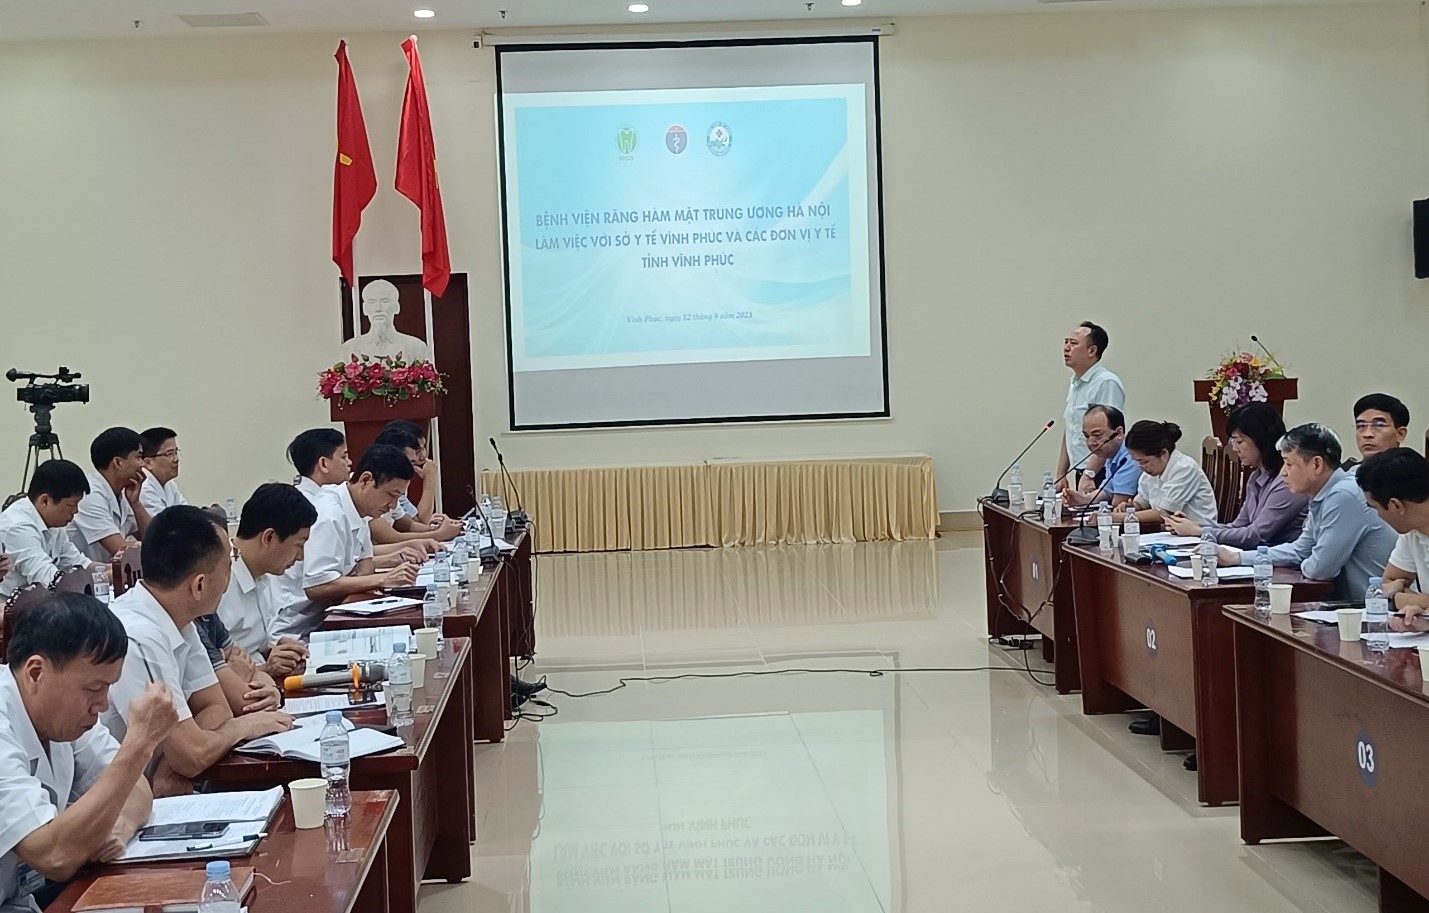 PGS.TS. Trần Cao Bính, Giám đốc bệnh viện Răng Hàm Mặt TW Hà Nội  phát biểu tại buổi làm việc